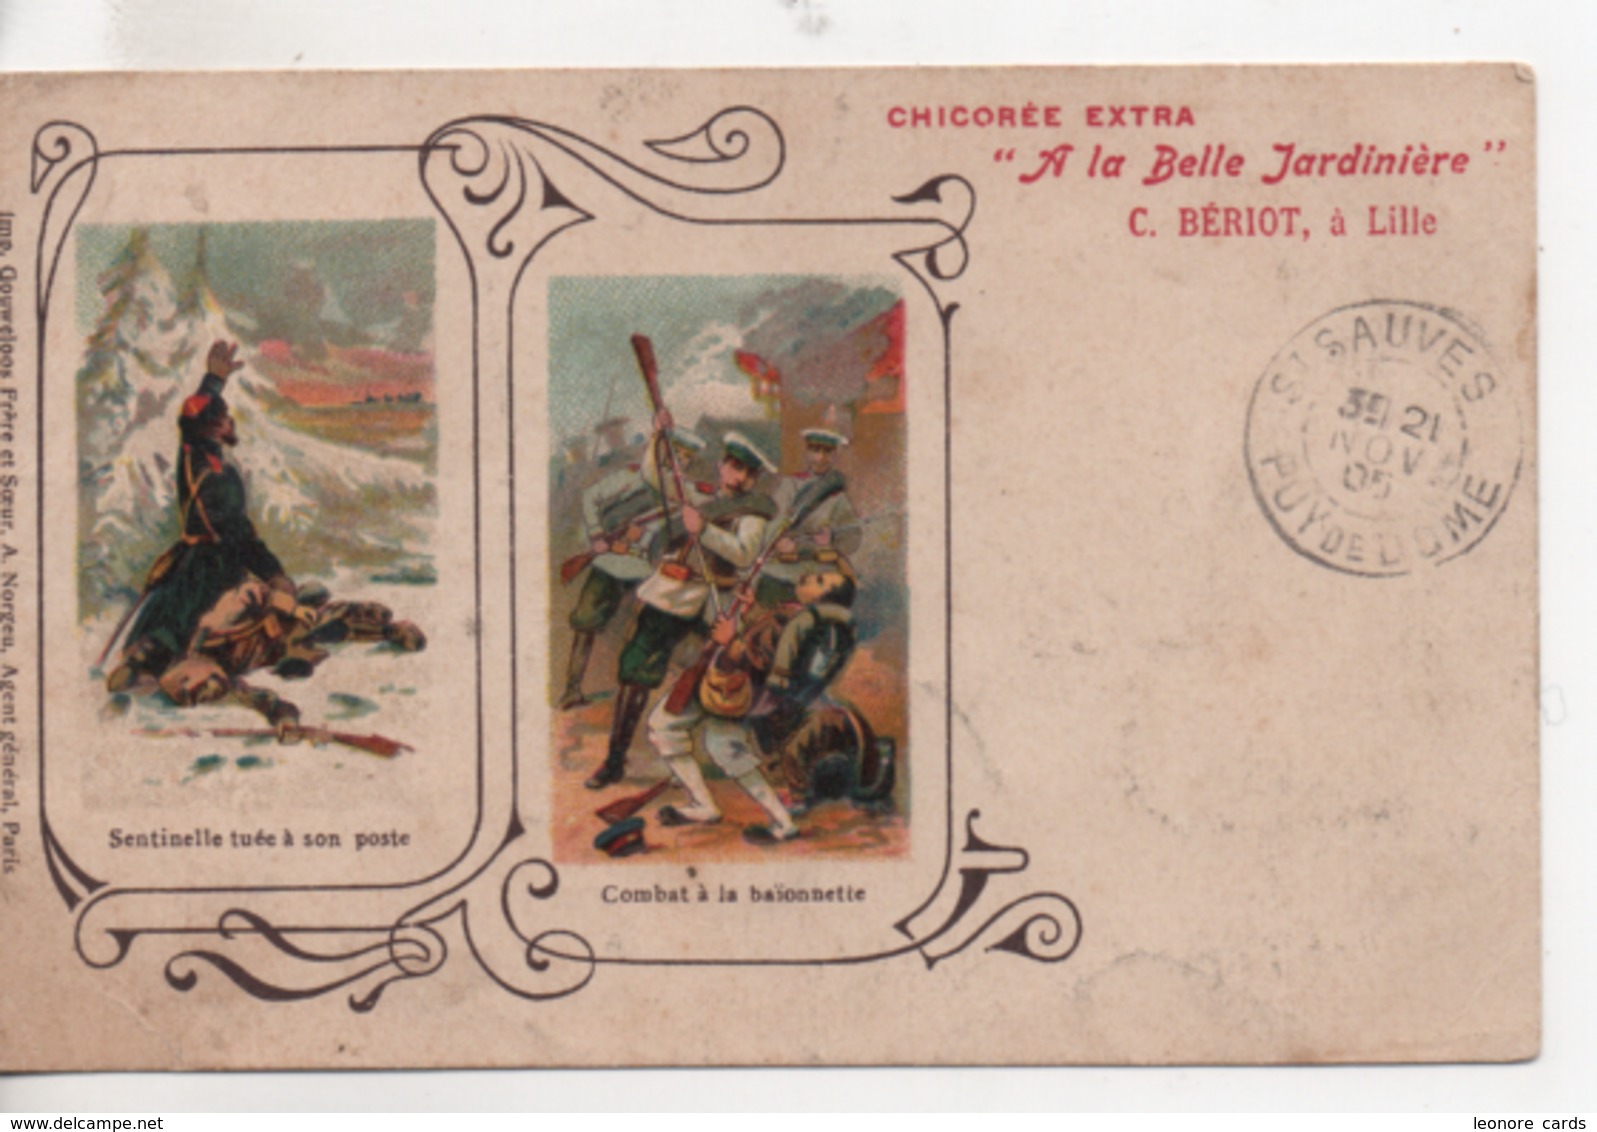 CPA.Publicité.Chicorée Extra.A La Belle Jardinière.1905.sentinelle Tuée Et Combat Baïonnette - Werbepostkarten